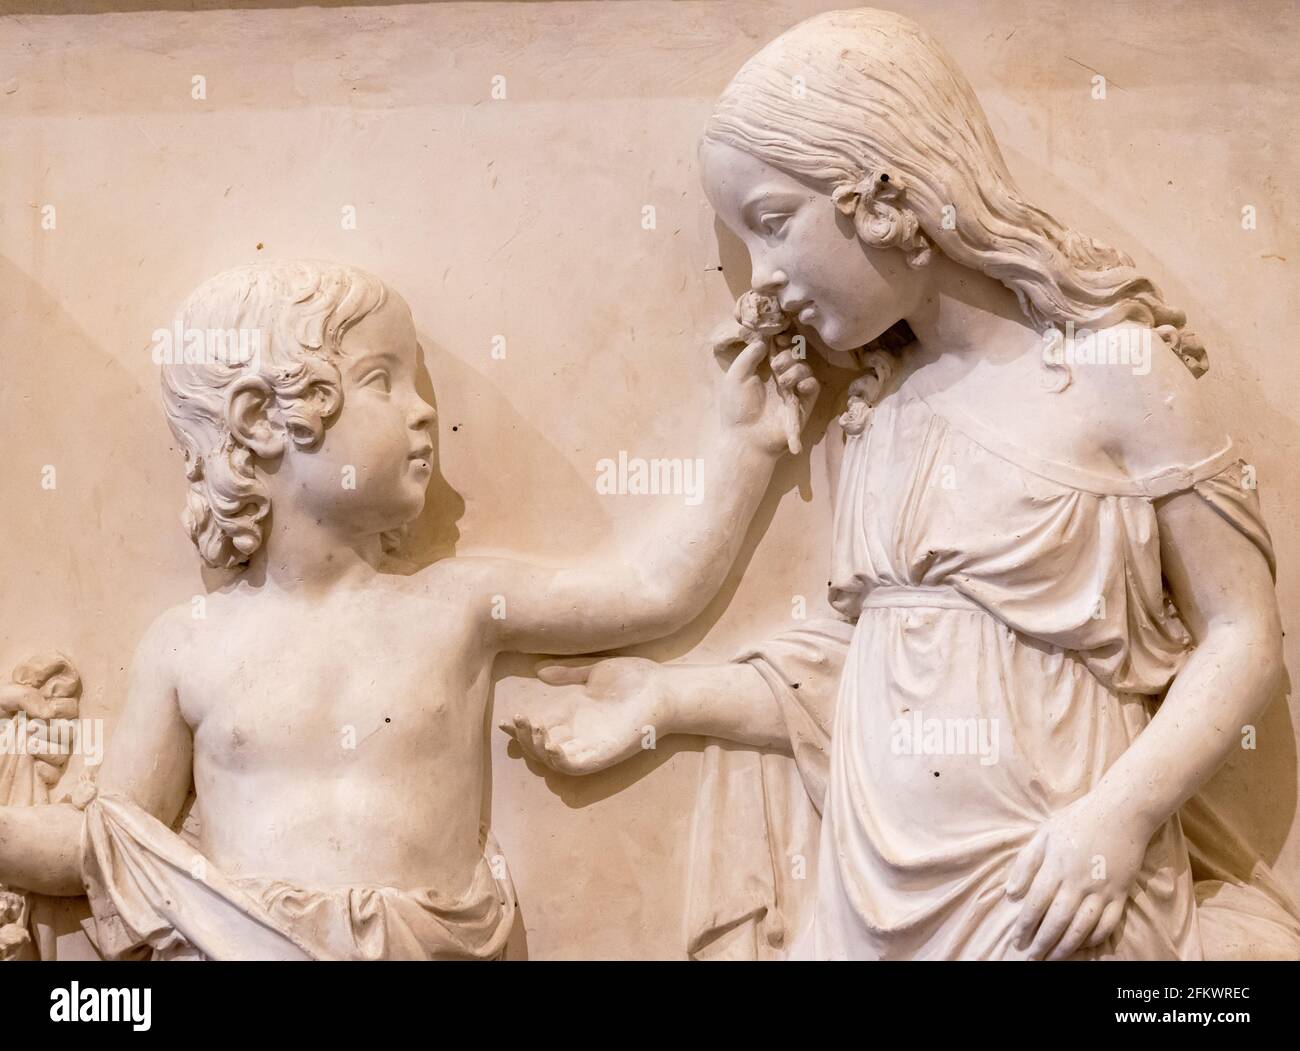 Nahaufnahme von Skulpturen, die an der Marmorwand geschnitzt wurden und ein Mädchen zeigen Riecht nach einer Blume, die von einem Jungen gegeben wurde Stockfoto